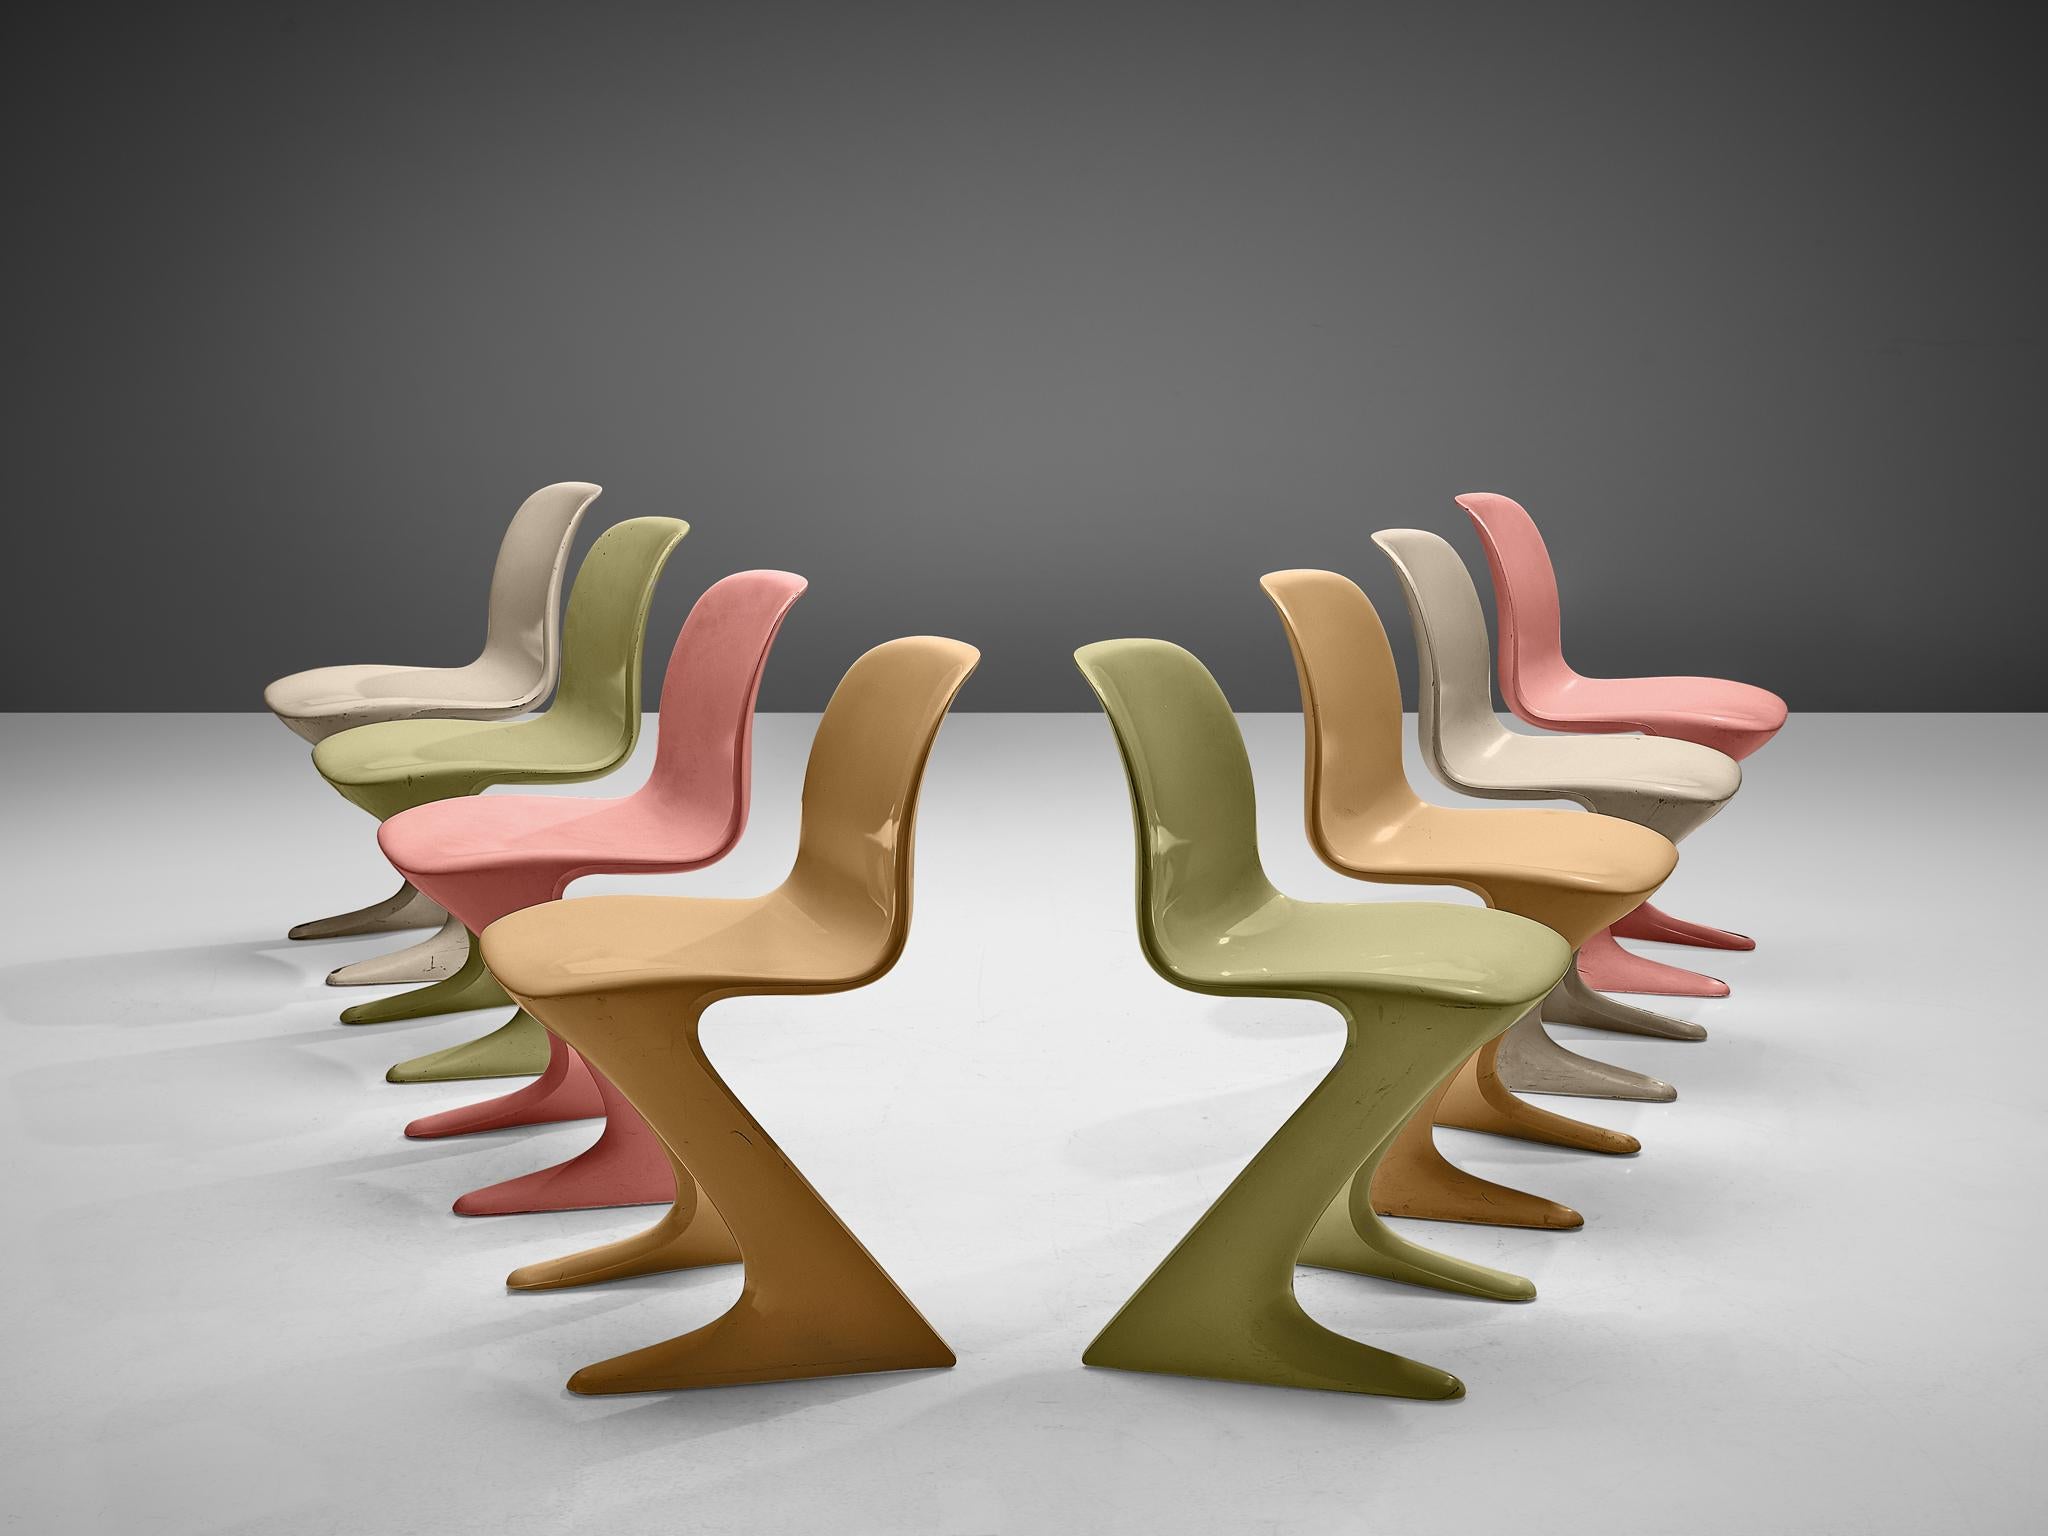 Ernst Moeckl pour Trabant, fauteuils 'Z', bois, Allemagne, 1968

Cet ensemble de chaises Kangourou colorées a été conçu par Ernst Moeckl en 1968. La chaise est également appelée chaise Z, en référence à sa forme. Pendant la période du rideau de fer,